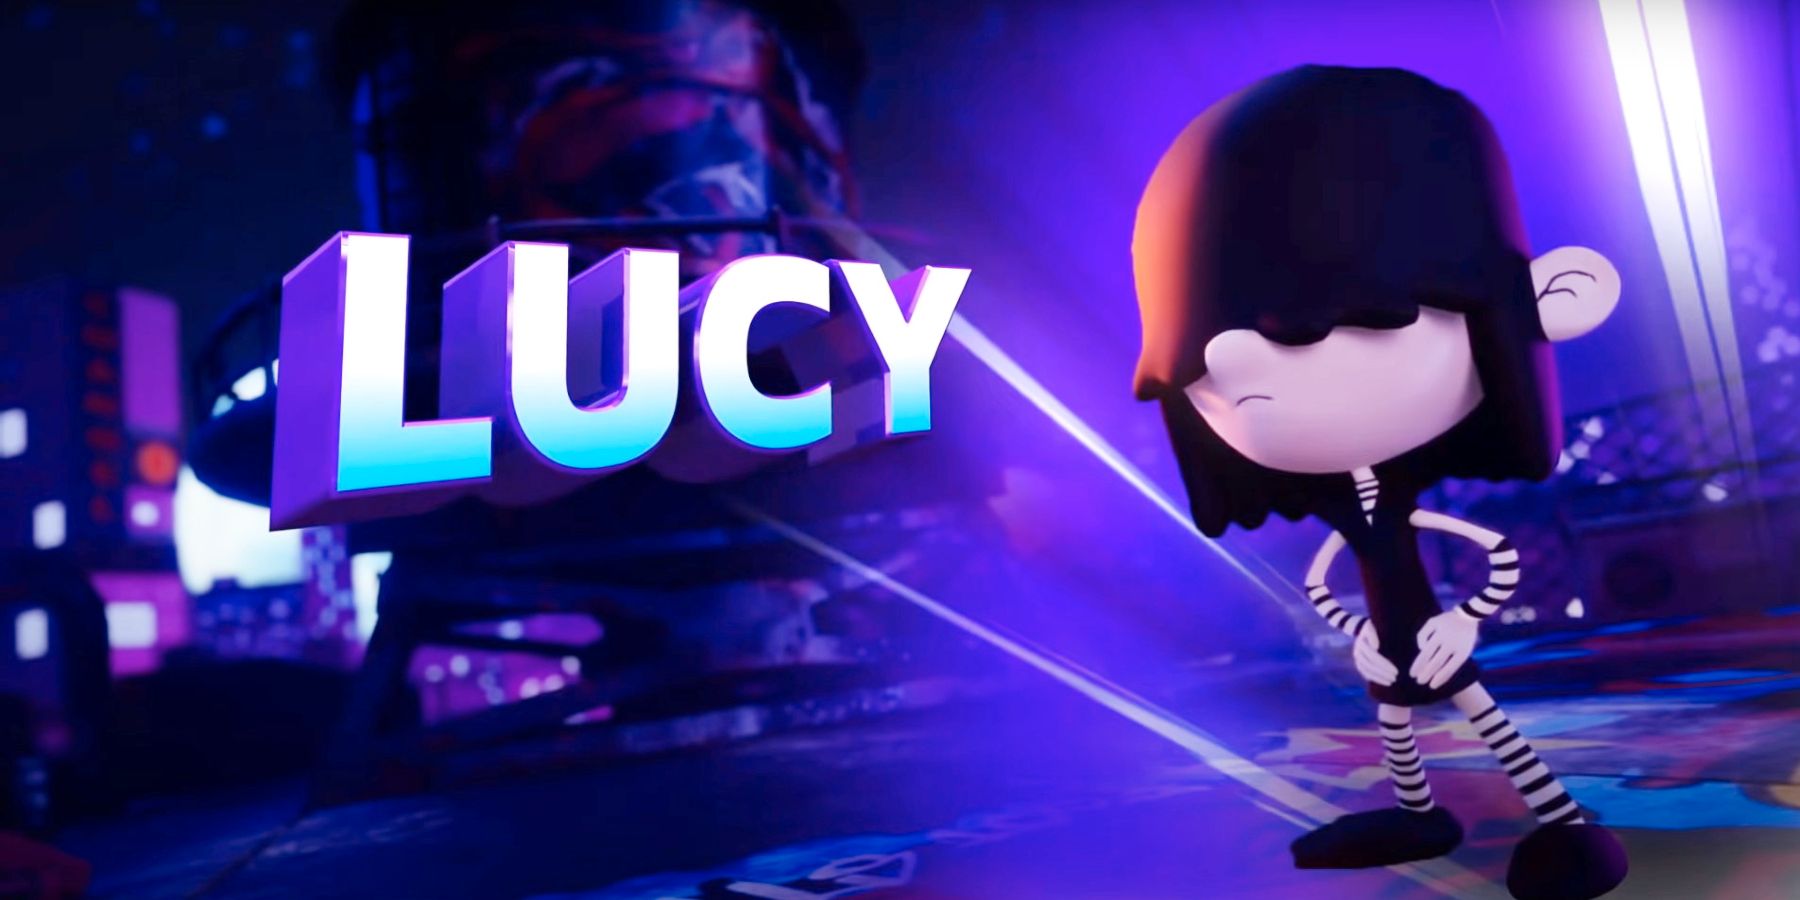 Nickelodeon 올스타 난투 게임 플레이 개요는 Lucy Loud에 관한 것입니다